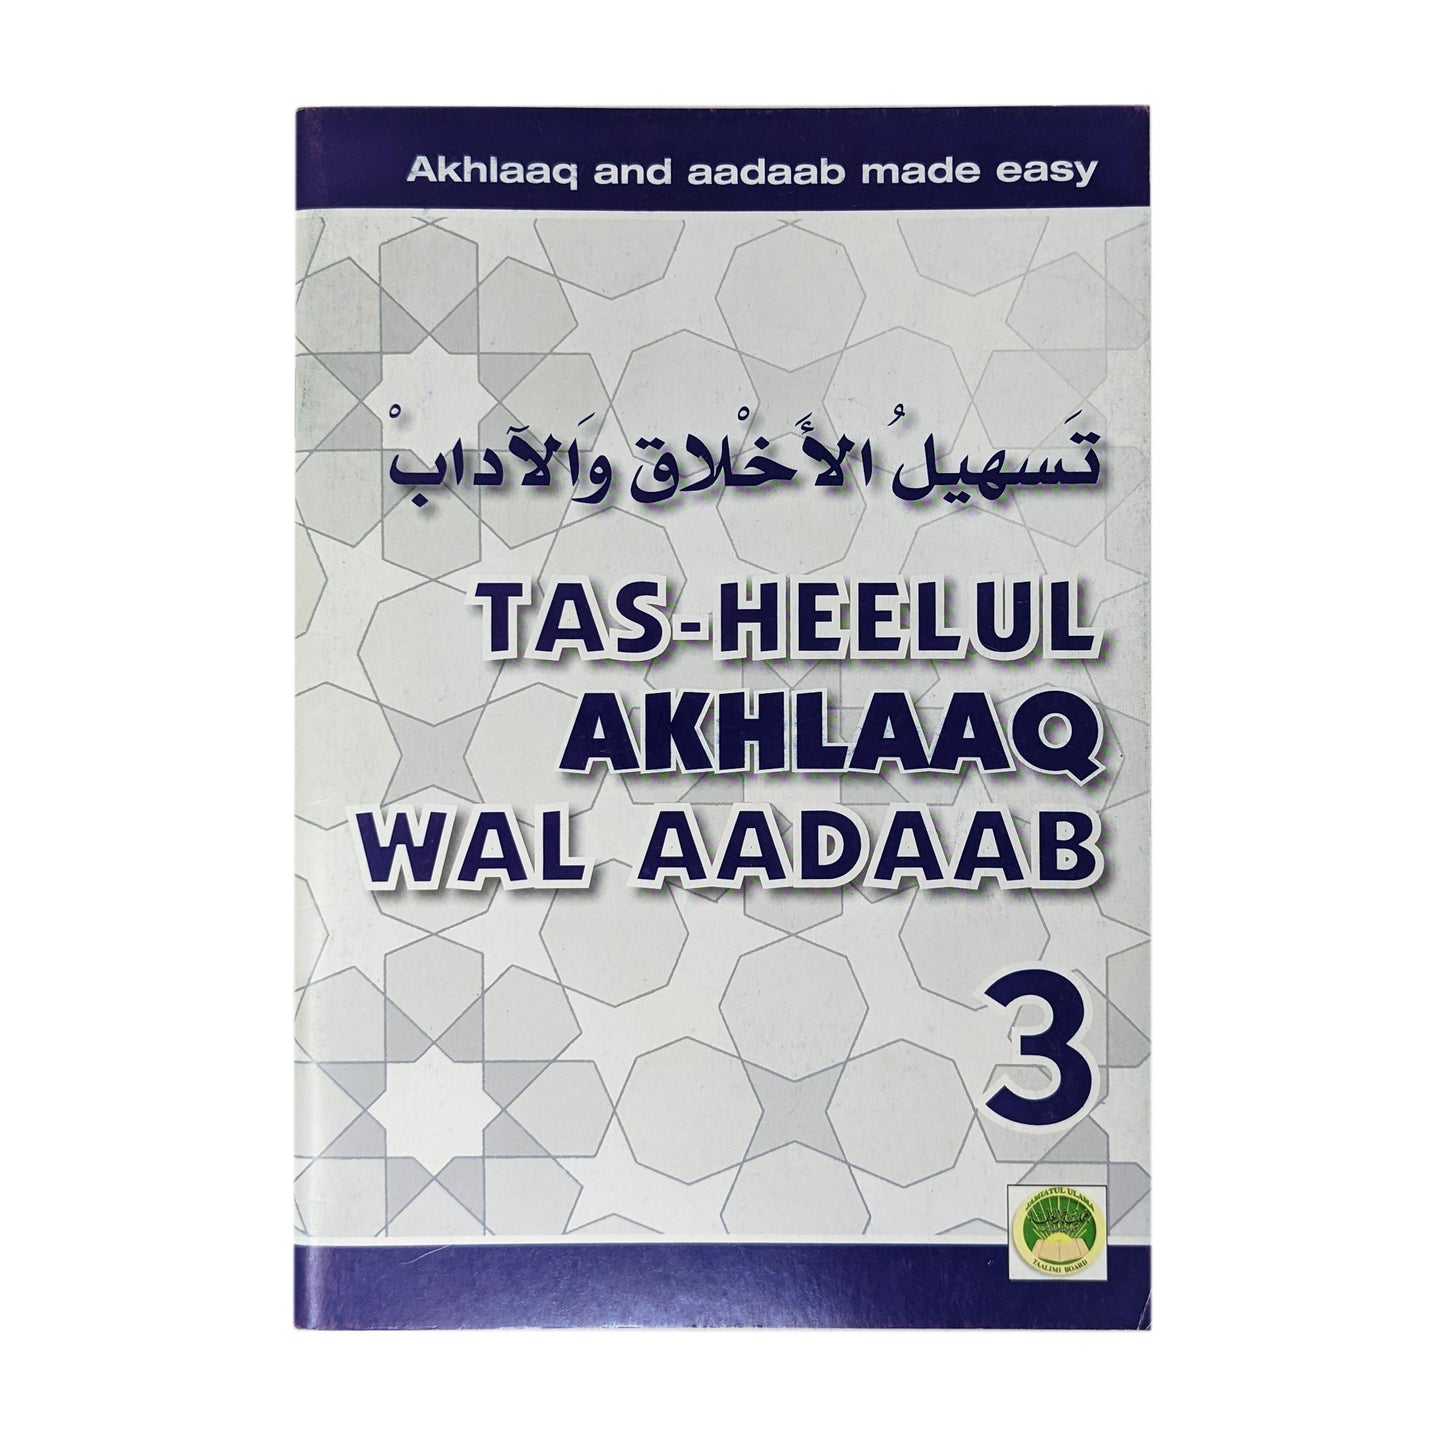 Tas-heelul Akhlaaq wal Aadaab 3